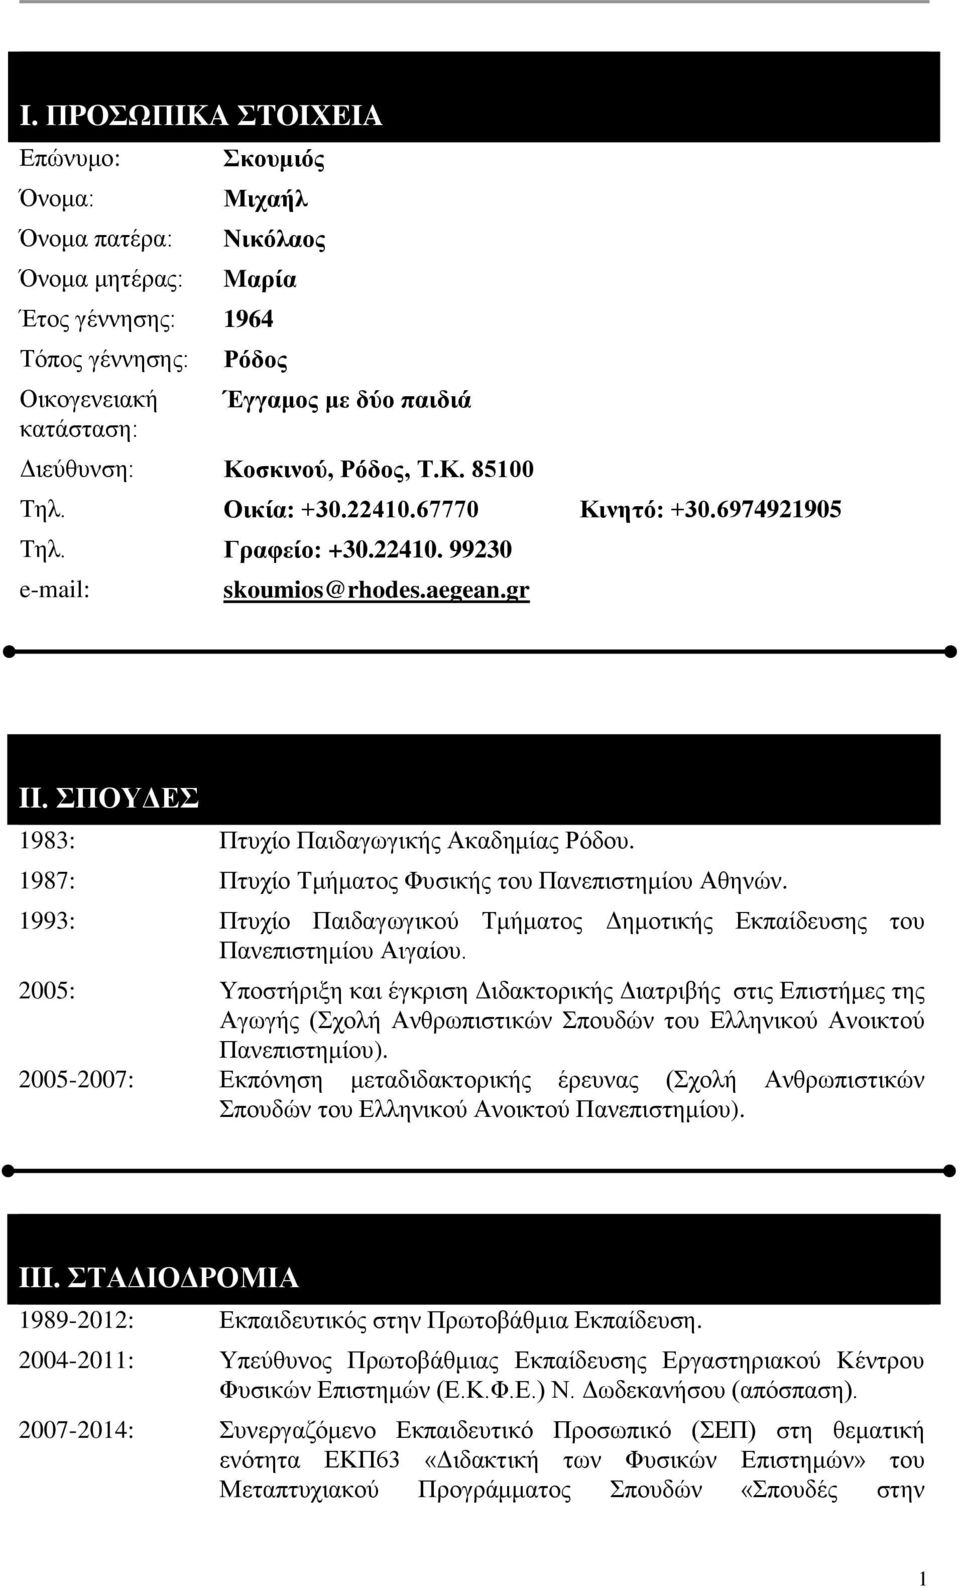 1987: Πτυχίο Τμήματος Φυσικής του Πανεπιστημίου Αθηνών. 1993: Πτυχίο Παιδαγωγικού Τμήματος Δημοτικής Εκπαίδευσης του Πανεπιστημίου Αιγαίου.